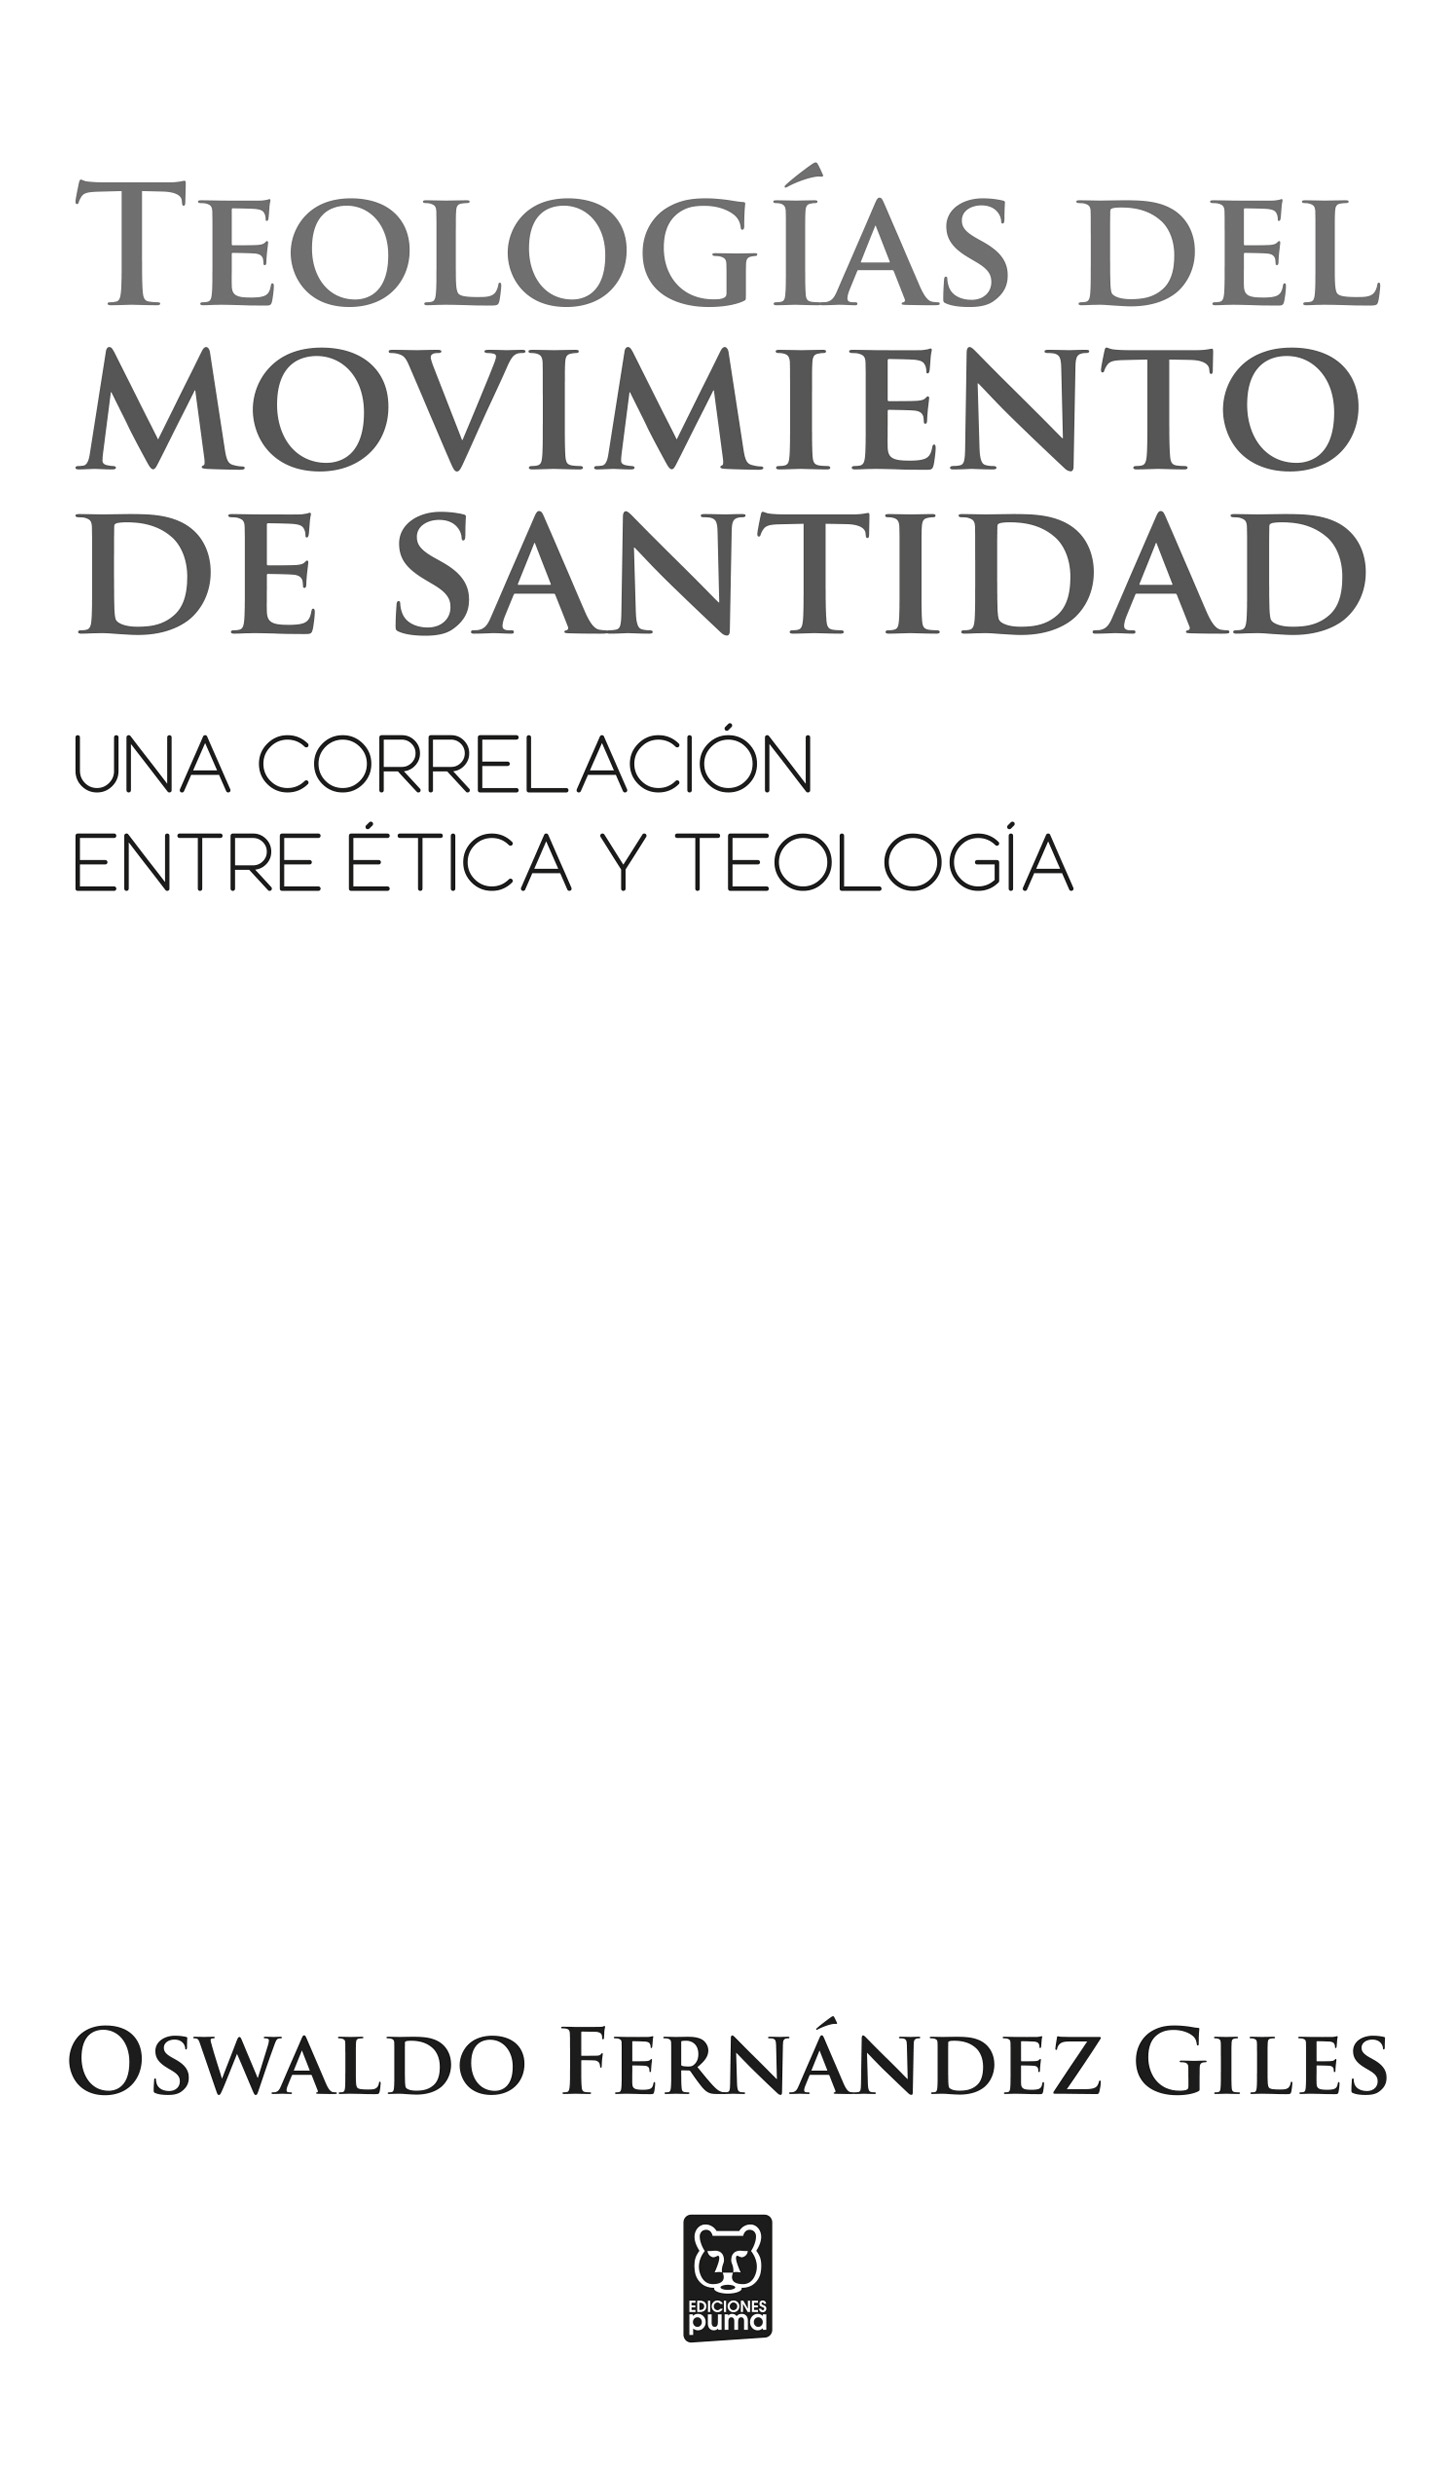 Teologías del movimiento de santidad una correlación entre ética y teología - photo 3